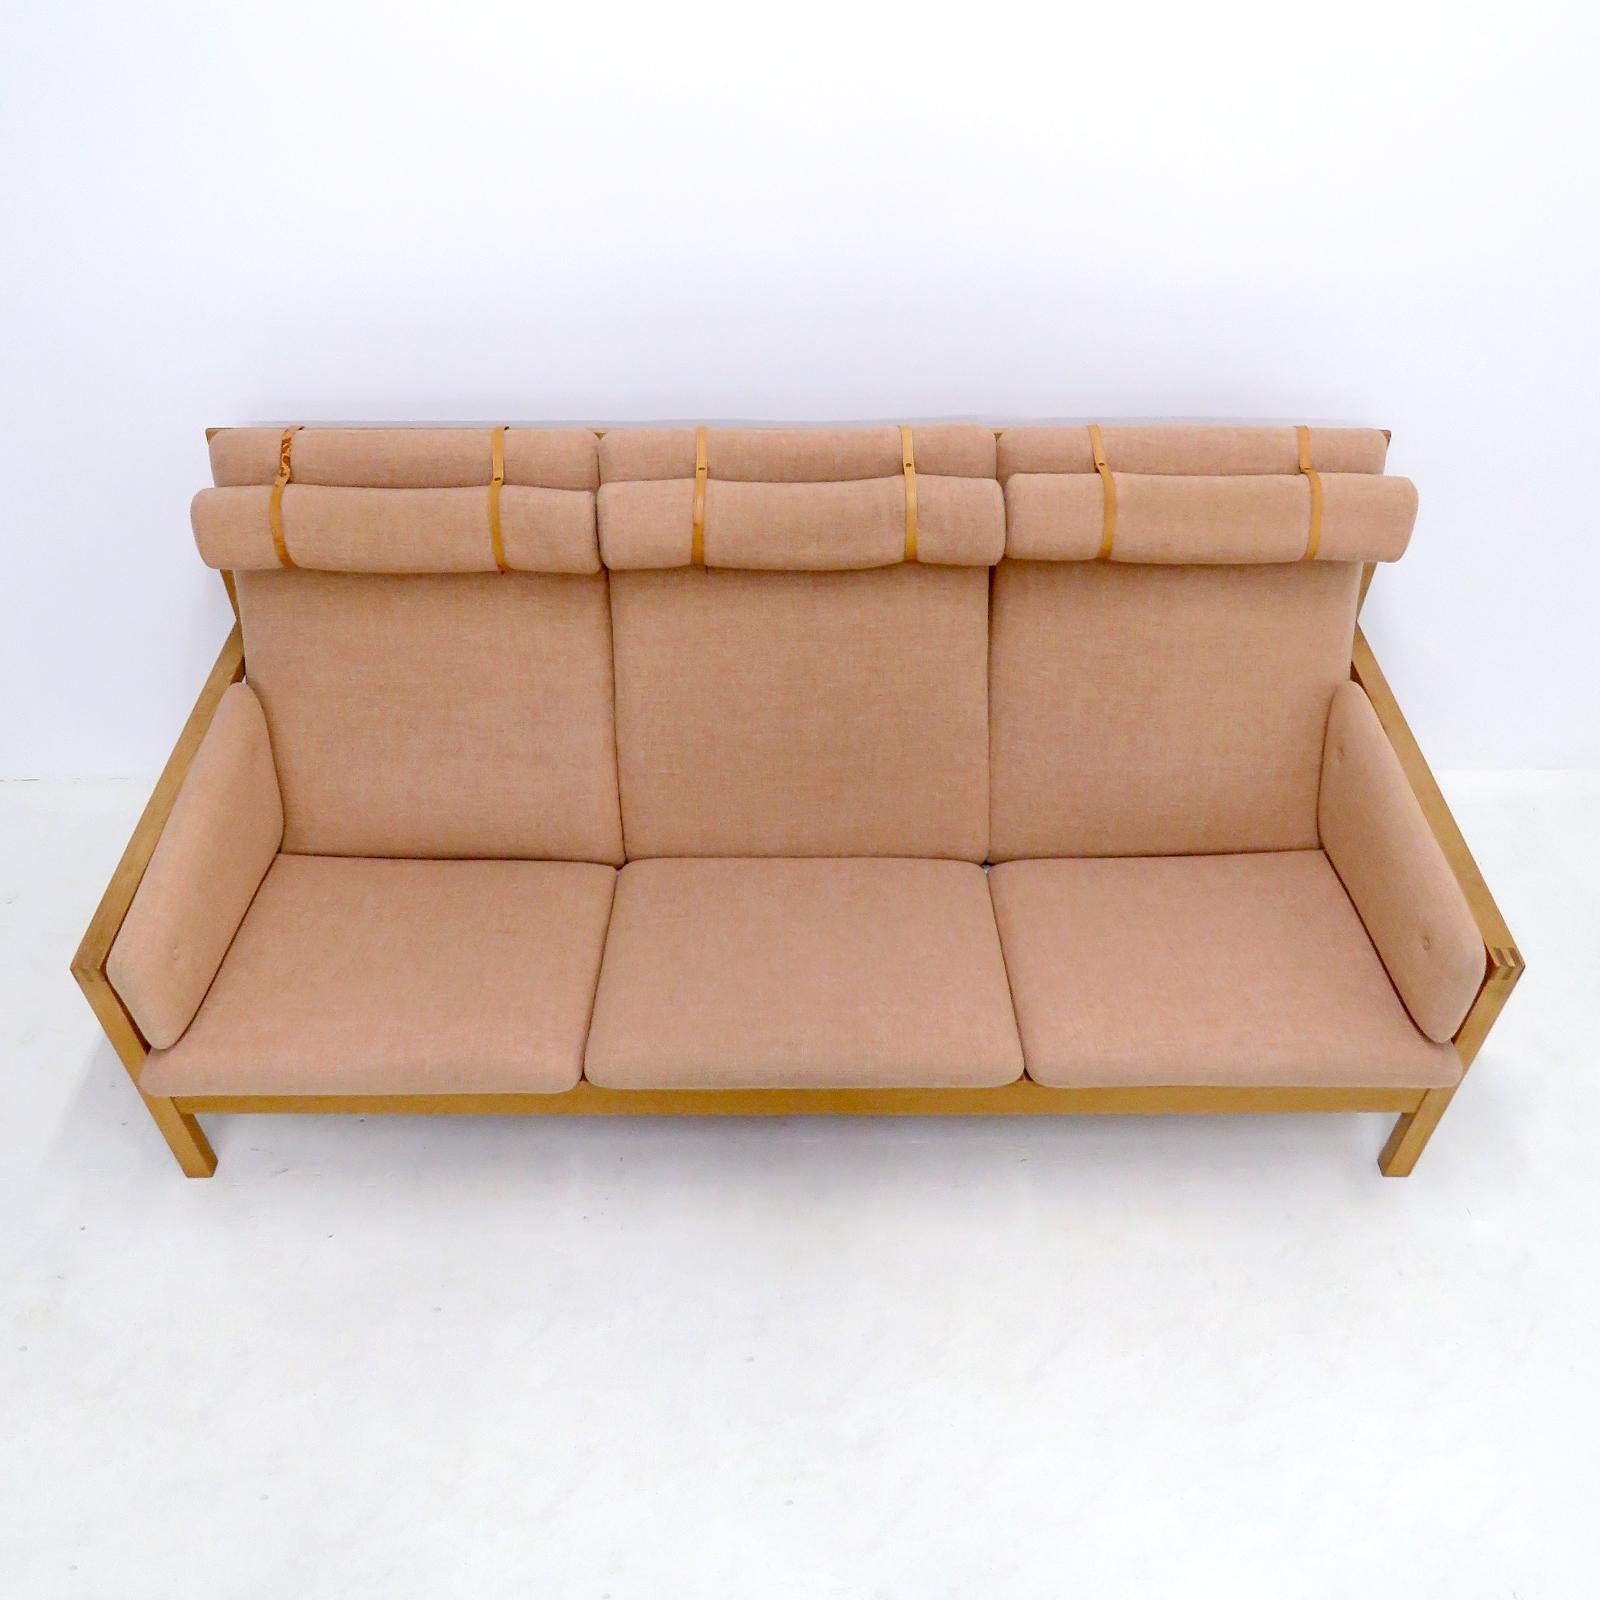 Wunderschönes Dreisitzer-Sofa Modell Nr. 2253, entworfen von Børge Mogensen im Jahr 1963 und hergestellt von Frederica Stolefabrik, Dänemark, in original lachsfarbener Wolle mit Lederriemen auf einem Eichenholzrahmen, markiert.
Provenienz: